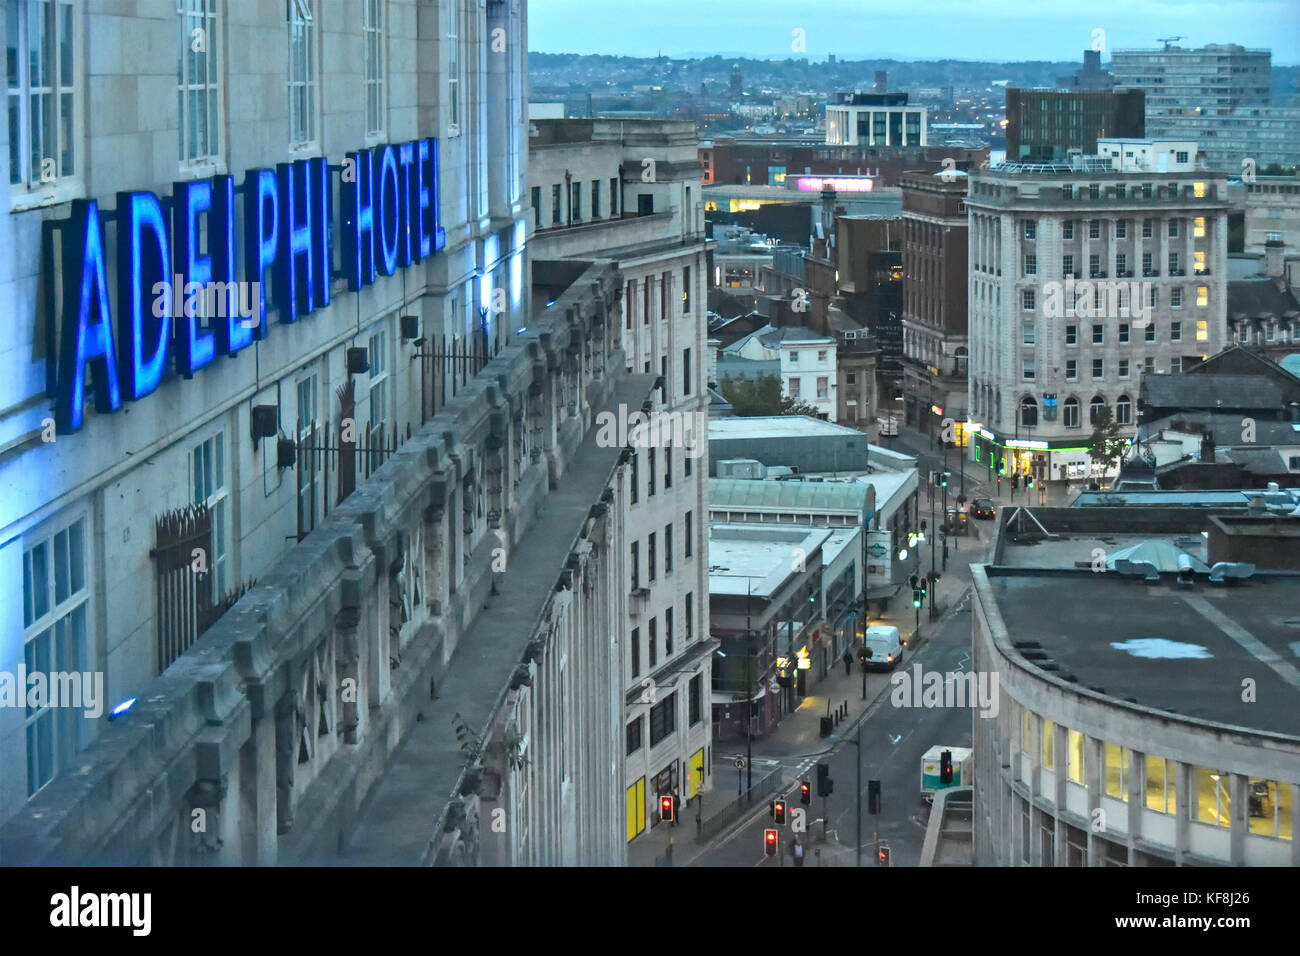 Vista aerea all'alba di prima mattina sopra le strade urbane del centro di Liverpool, segno blu al neon per Britannia Adelphi Hotel business Merseyside Inghilterra UK Foto Stock